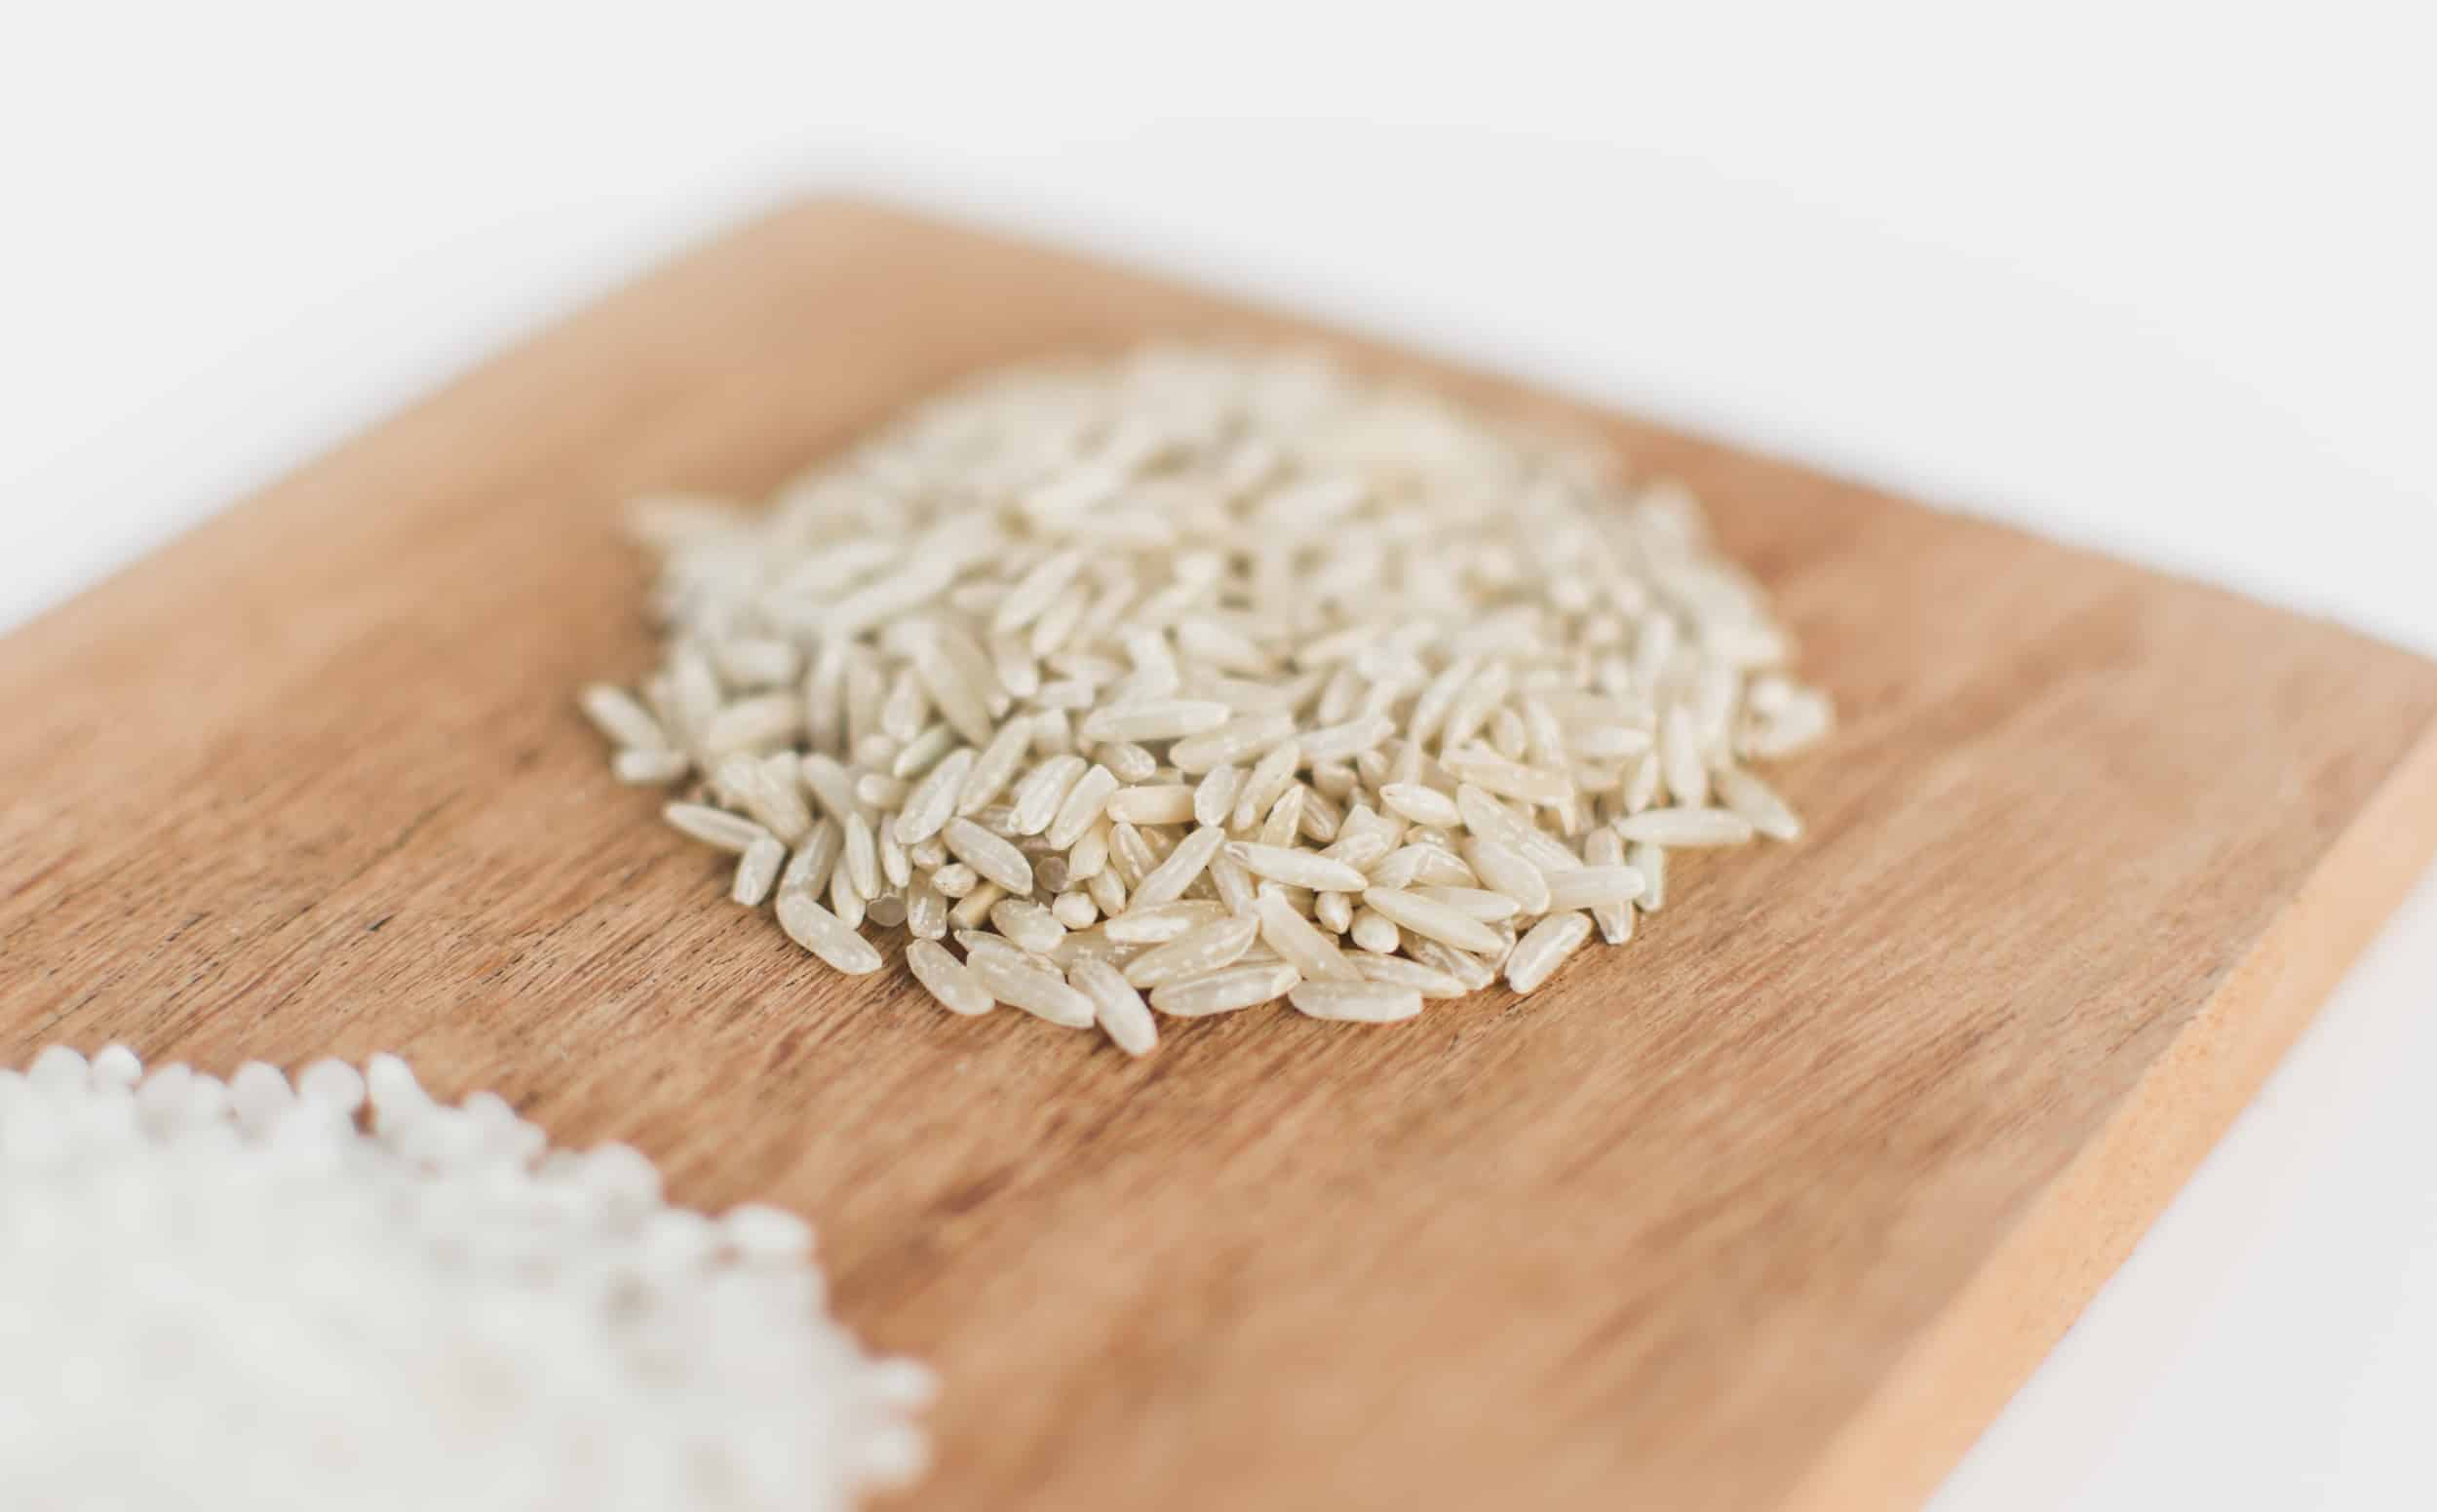 arroz integral rico em fibras